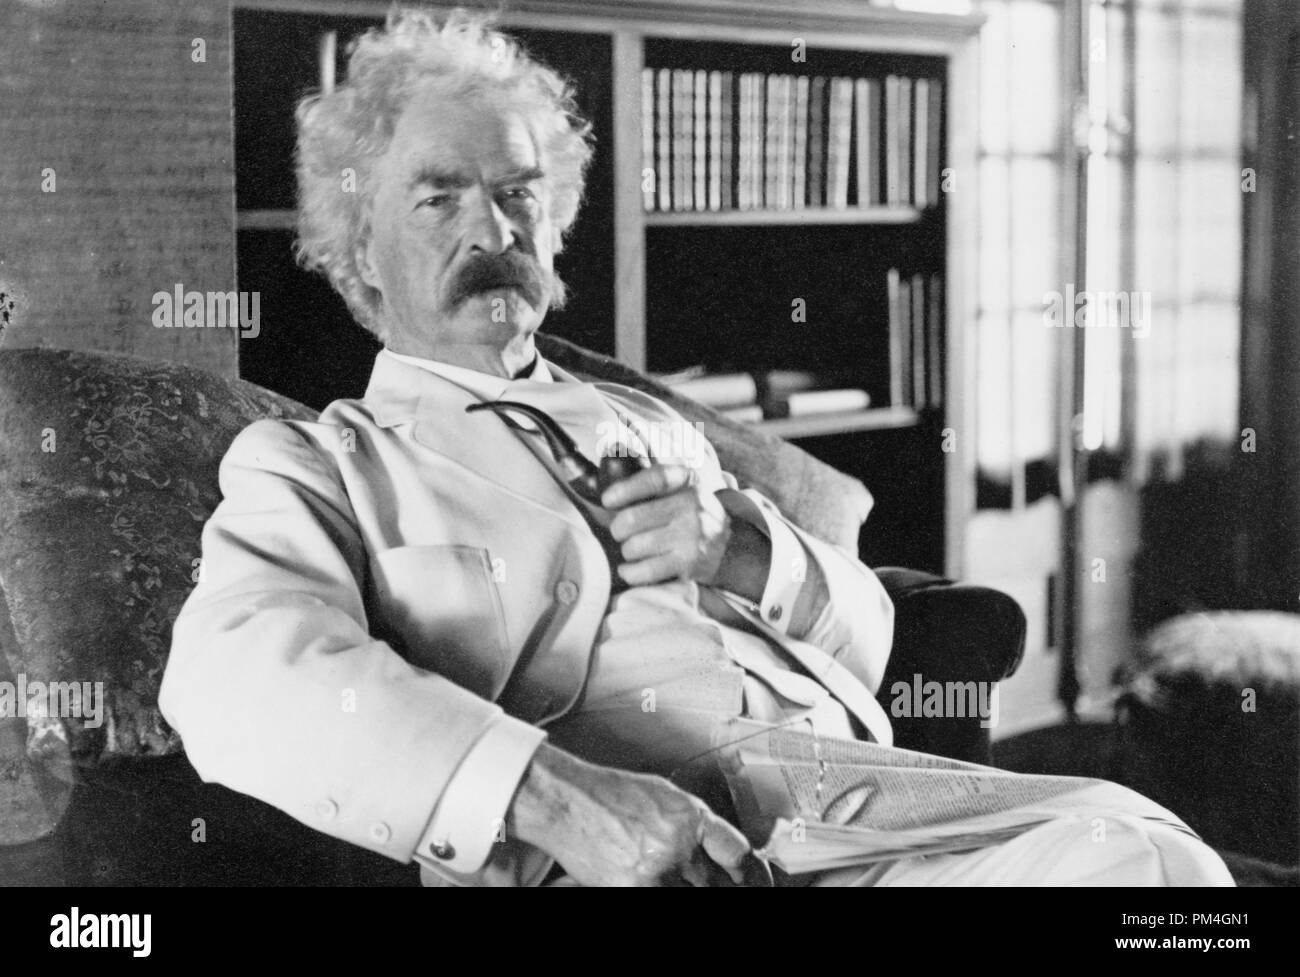 Mark Twain (Samuel L. Clemens), tres cuartos de longitud vertical, sentado, mirando hacia la derecha, sujetando el tubo, circa 1905. Archivo de referencia # 1003 066tha Foto de stock